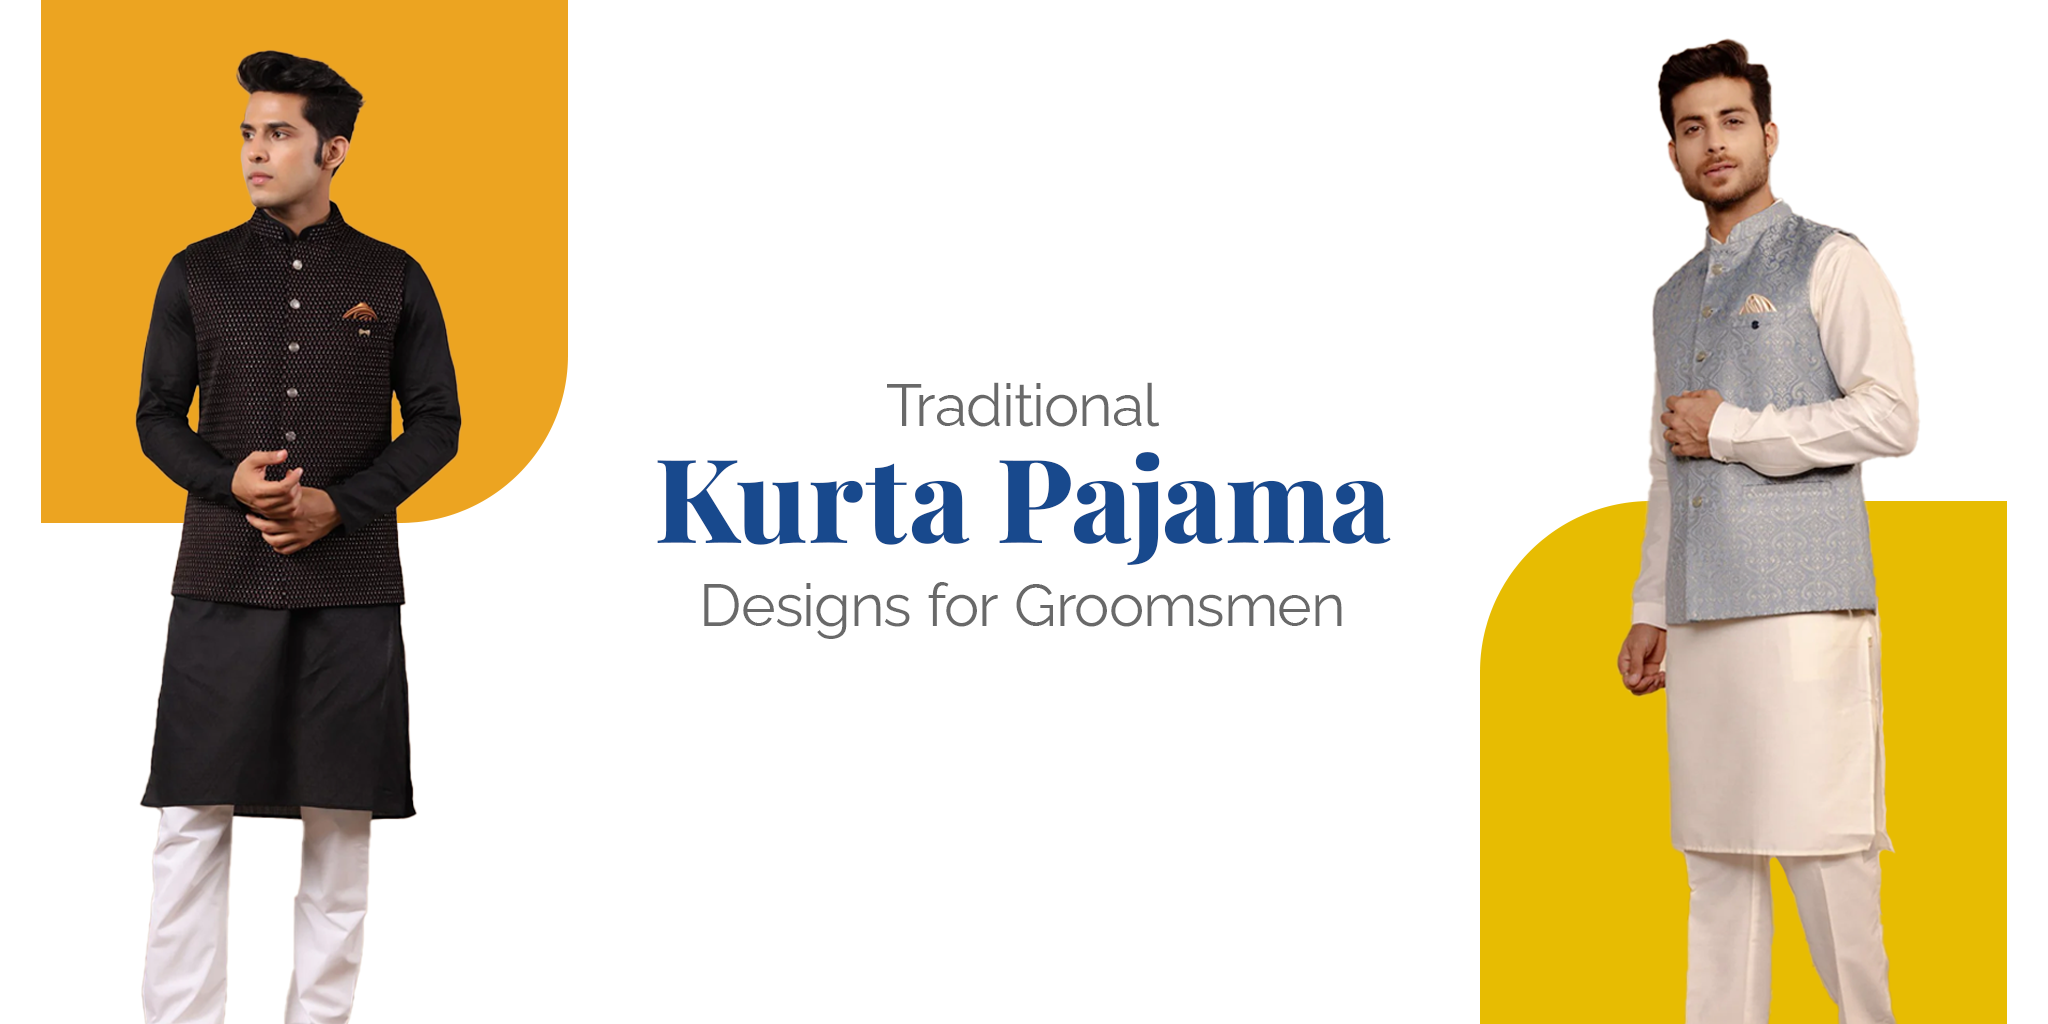 Traditional Kurta Pajama Designs for Groomsmen